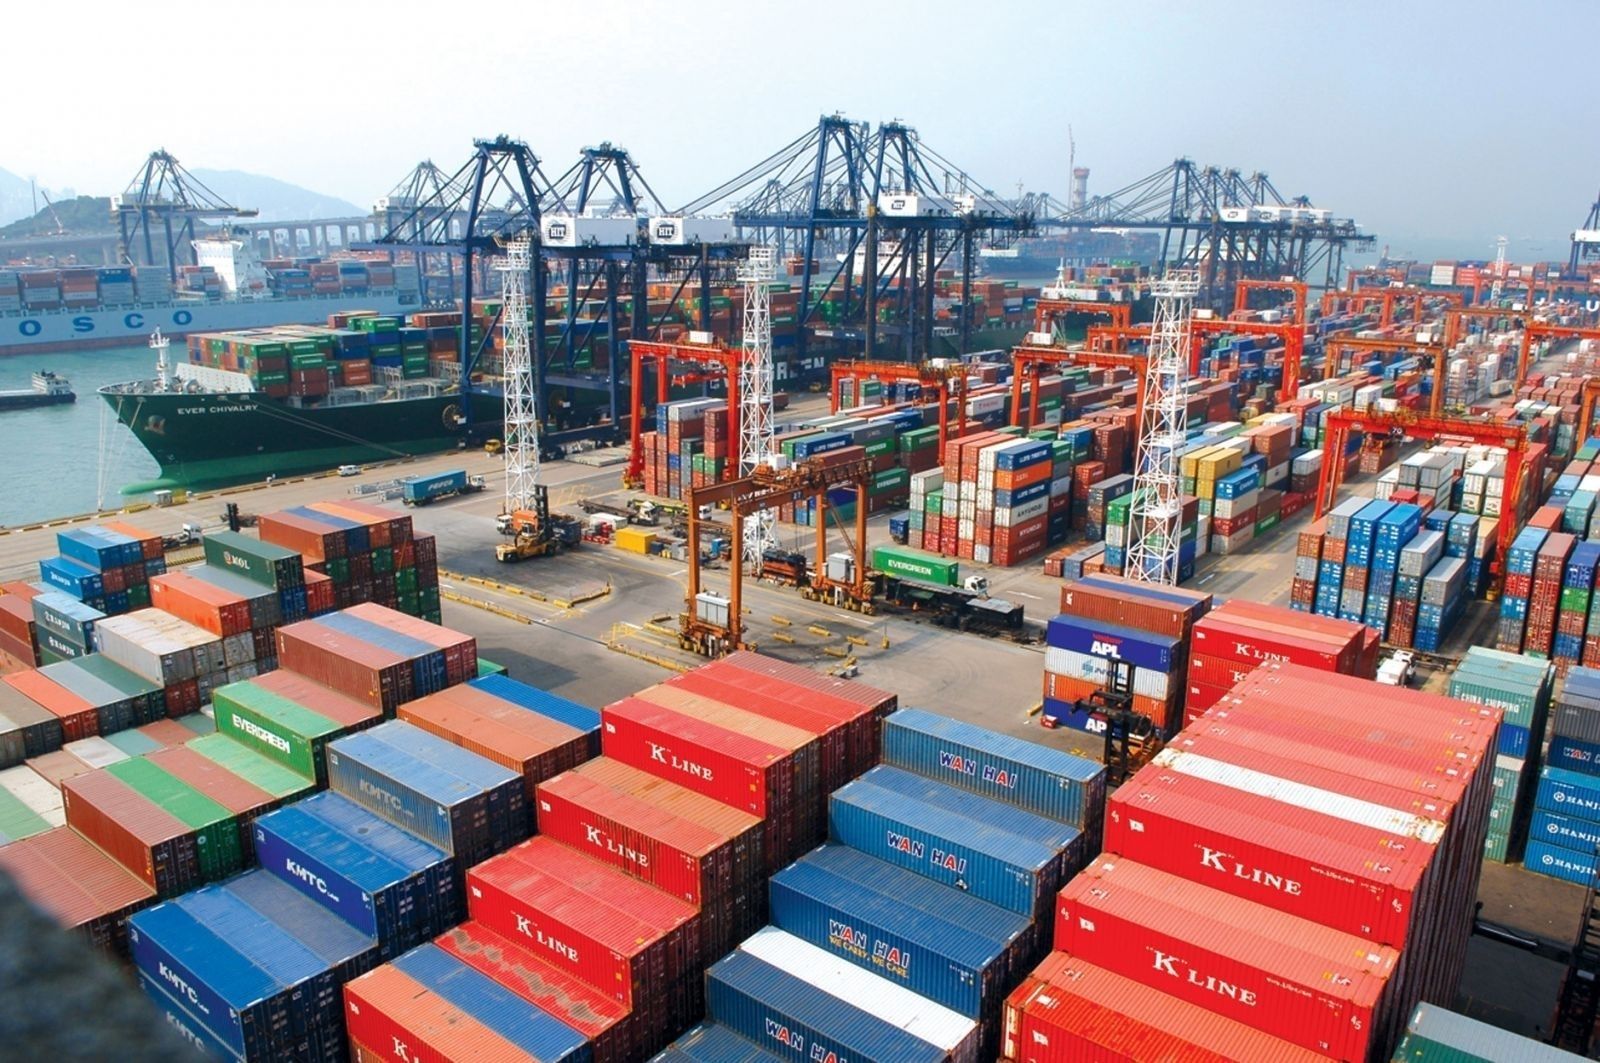 中国・天津港で、モンゴルへの出荷を待つコンテナが約2倍増加7000個以上のコンテナが積み上げられている